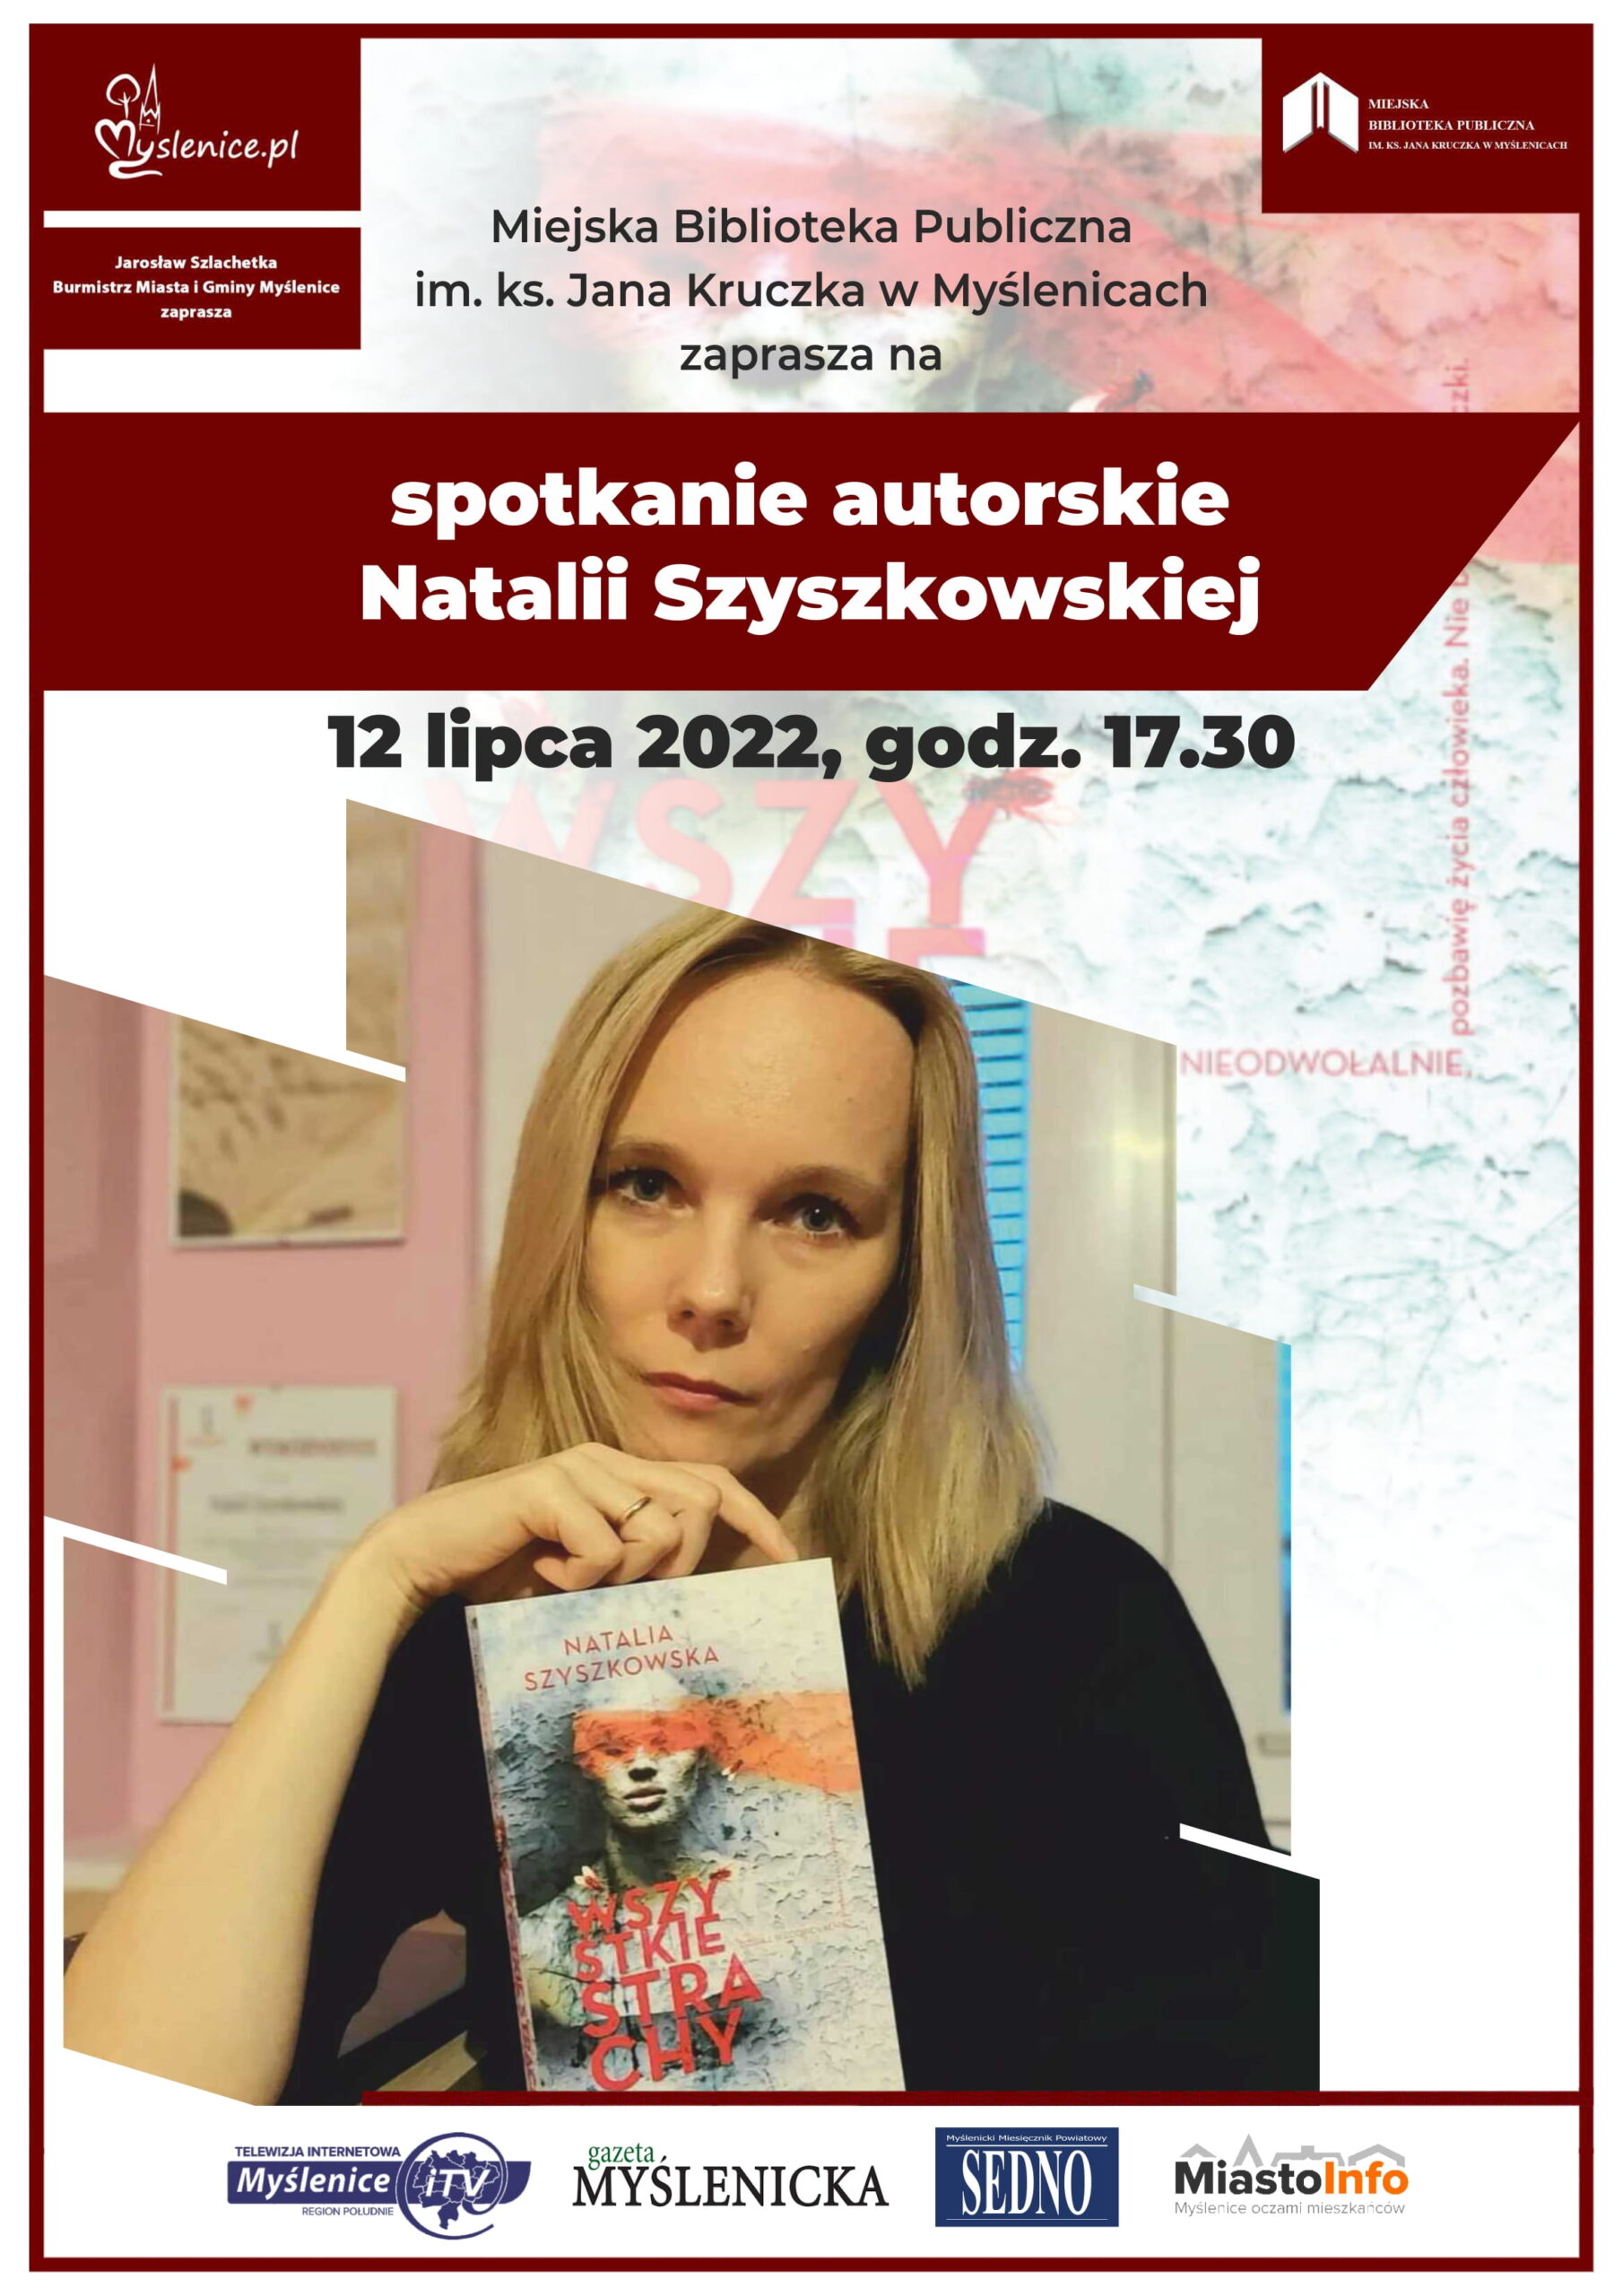 Spotkanie autorskie Natalii Szyszkowskiej